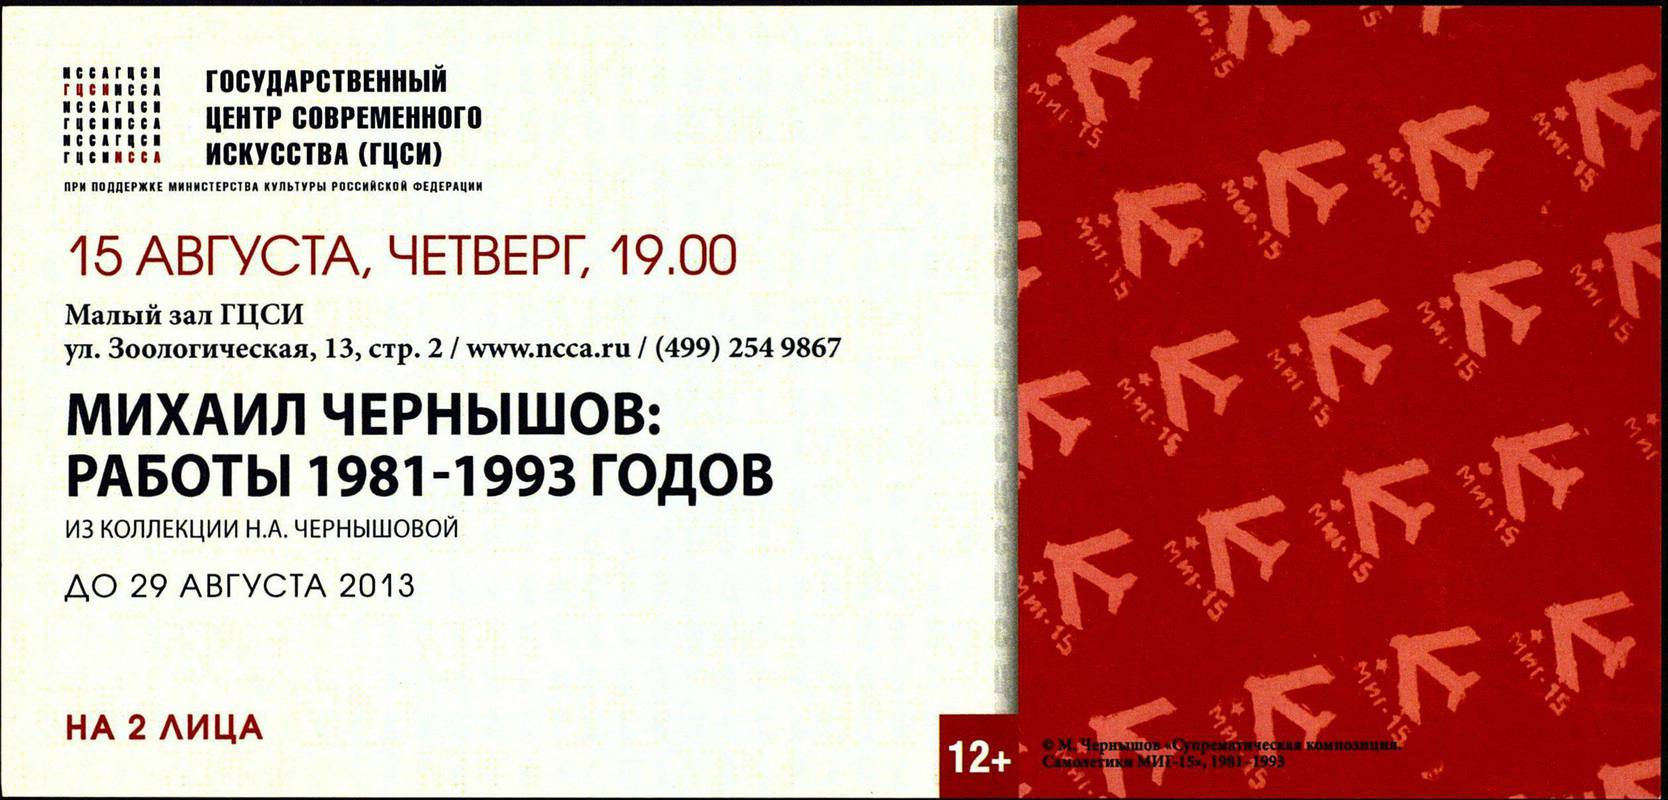 Михаил Чернышов: работы 1981–1993 годов